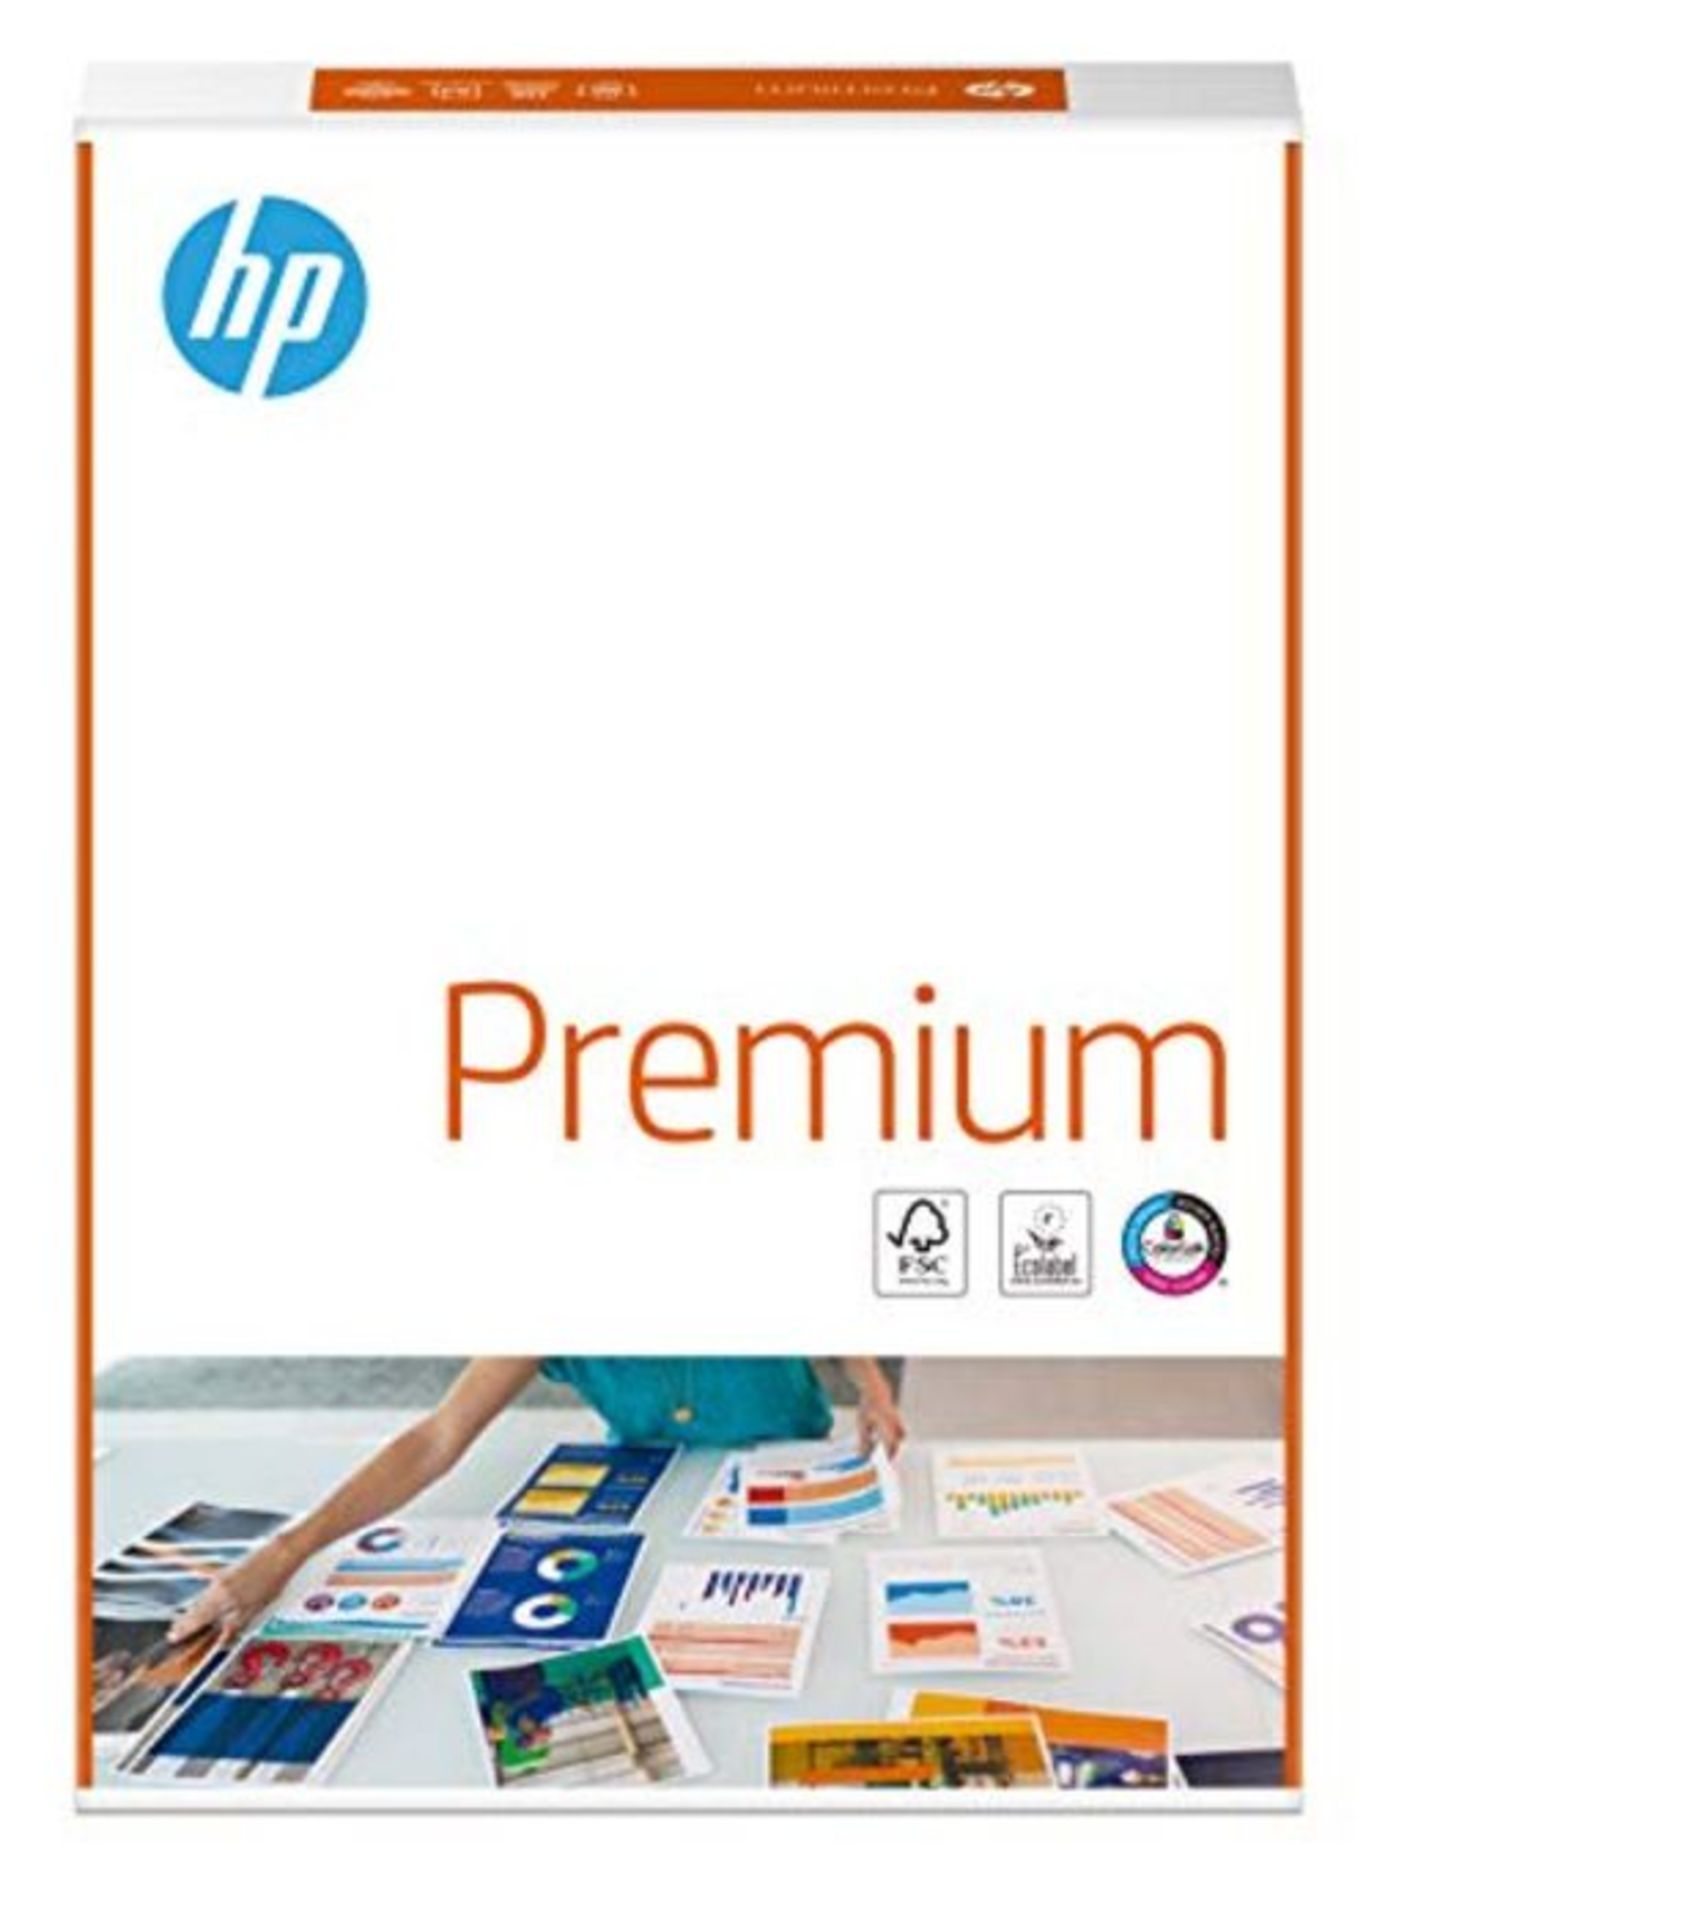 HP Printer Paper, Premium A4 Paper, 210x297mm, 80gsm, 1 Ream, 500 Sheets - FSC Certifi